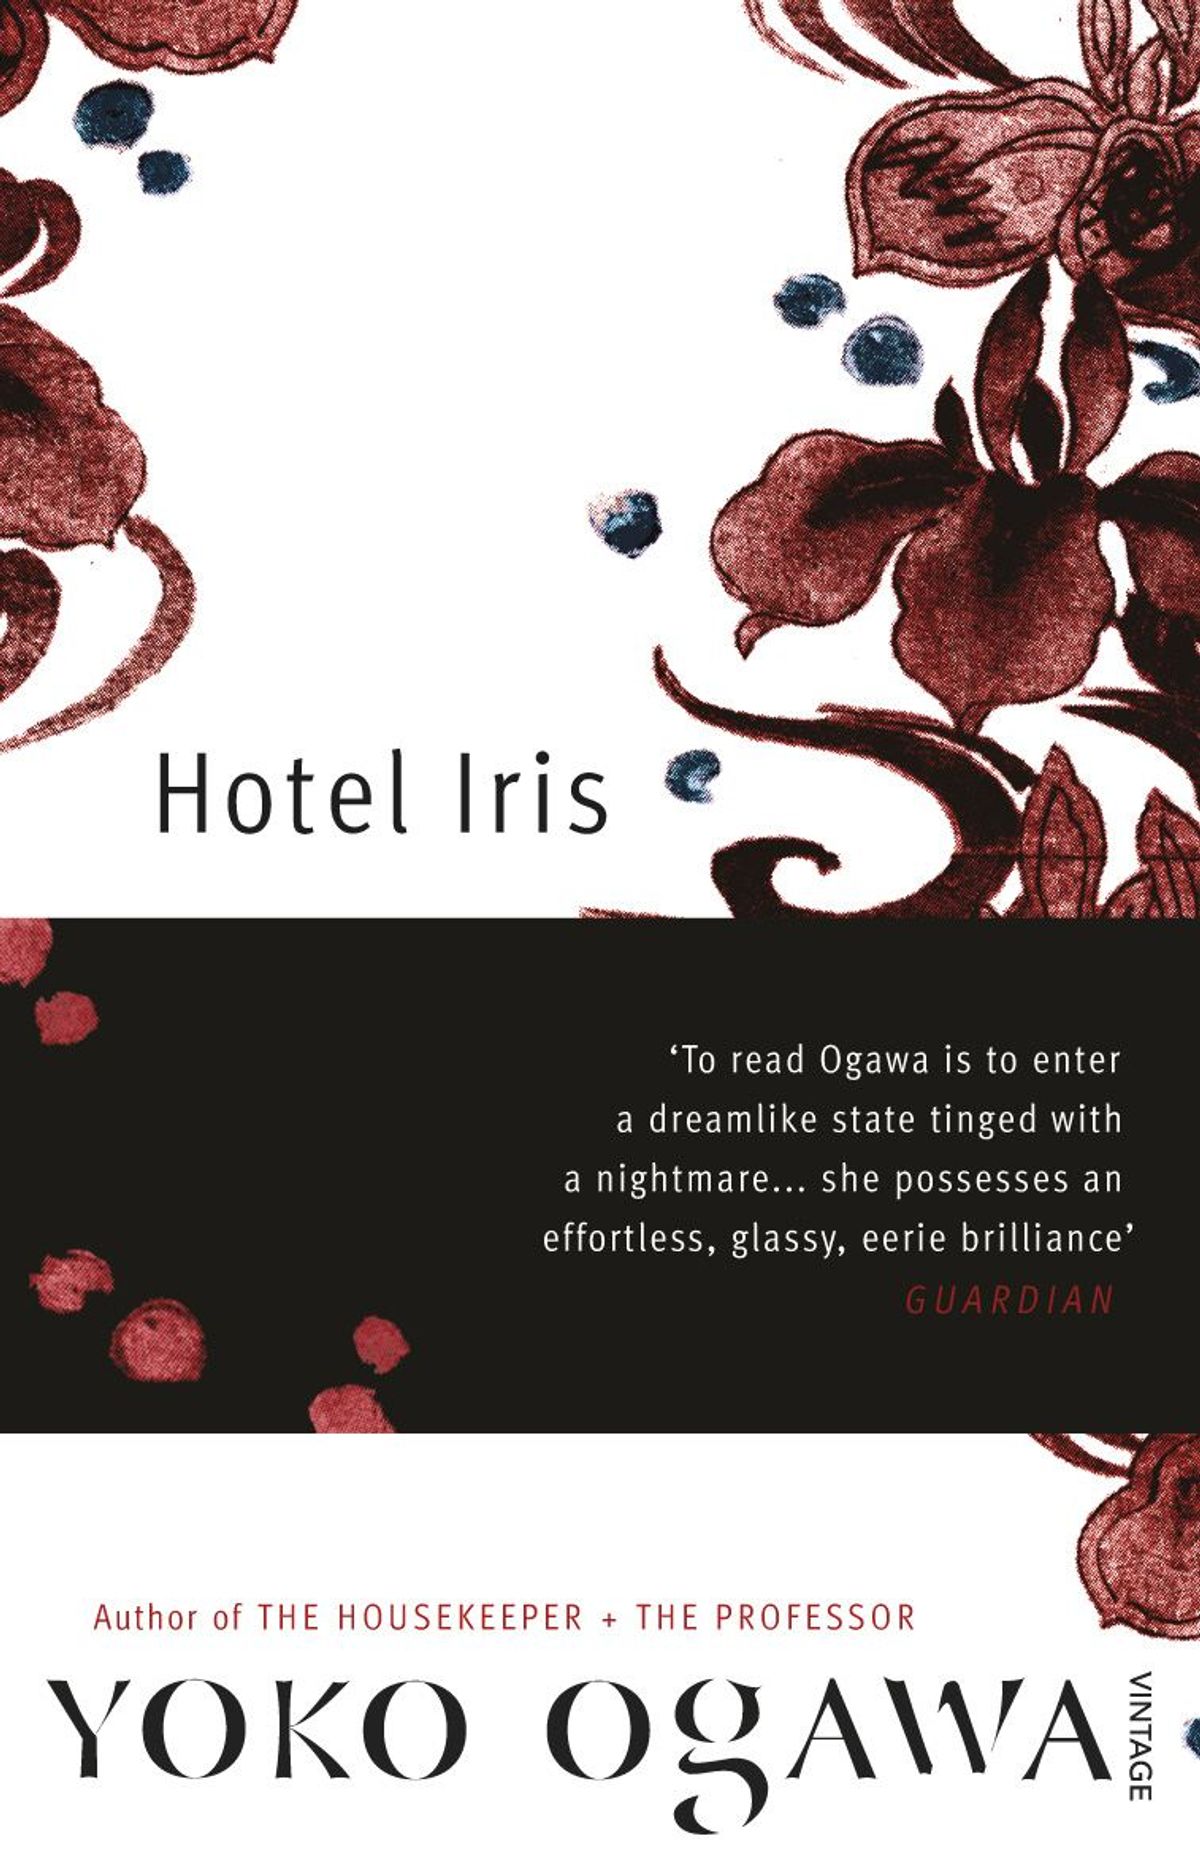 Hotel Iris (ホテル・アイリス) – Yoko Ogawa